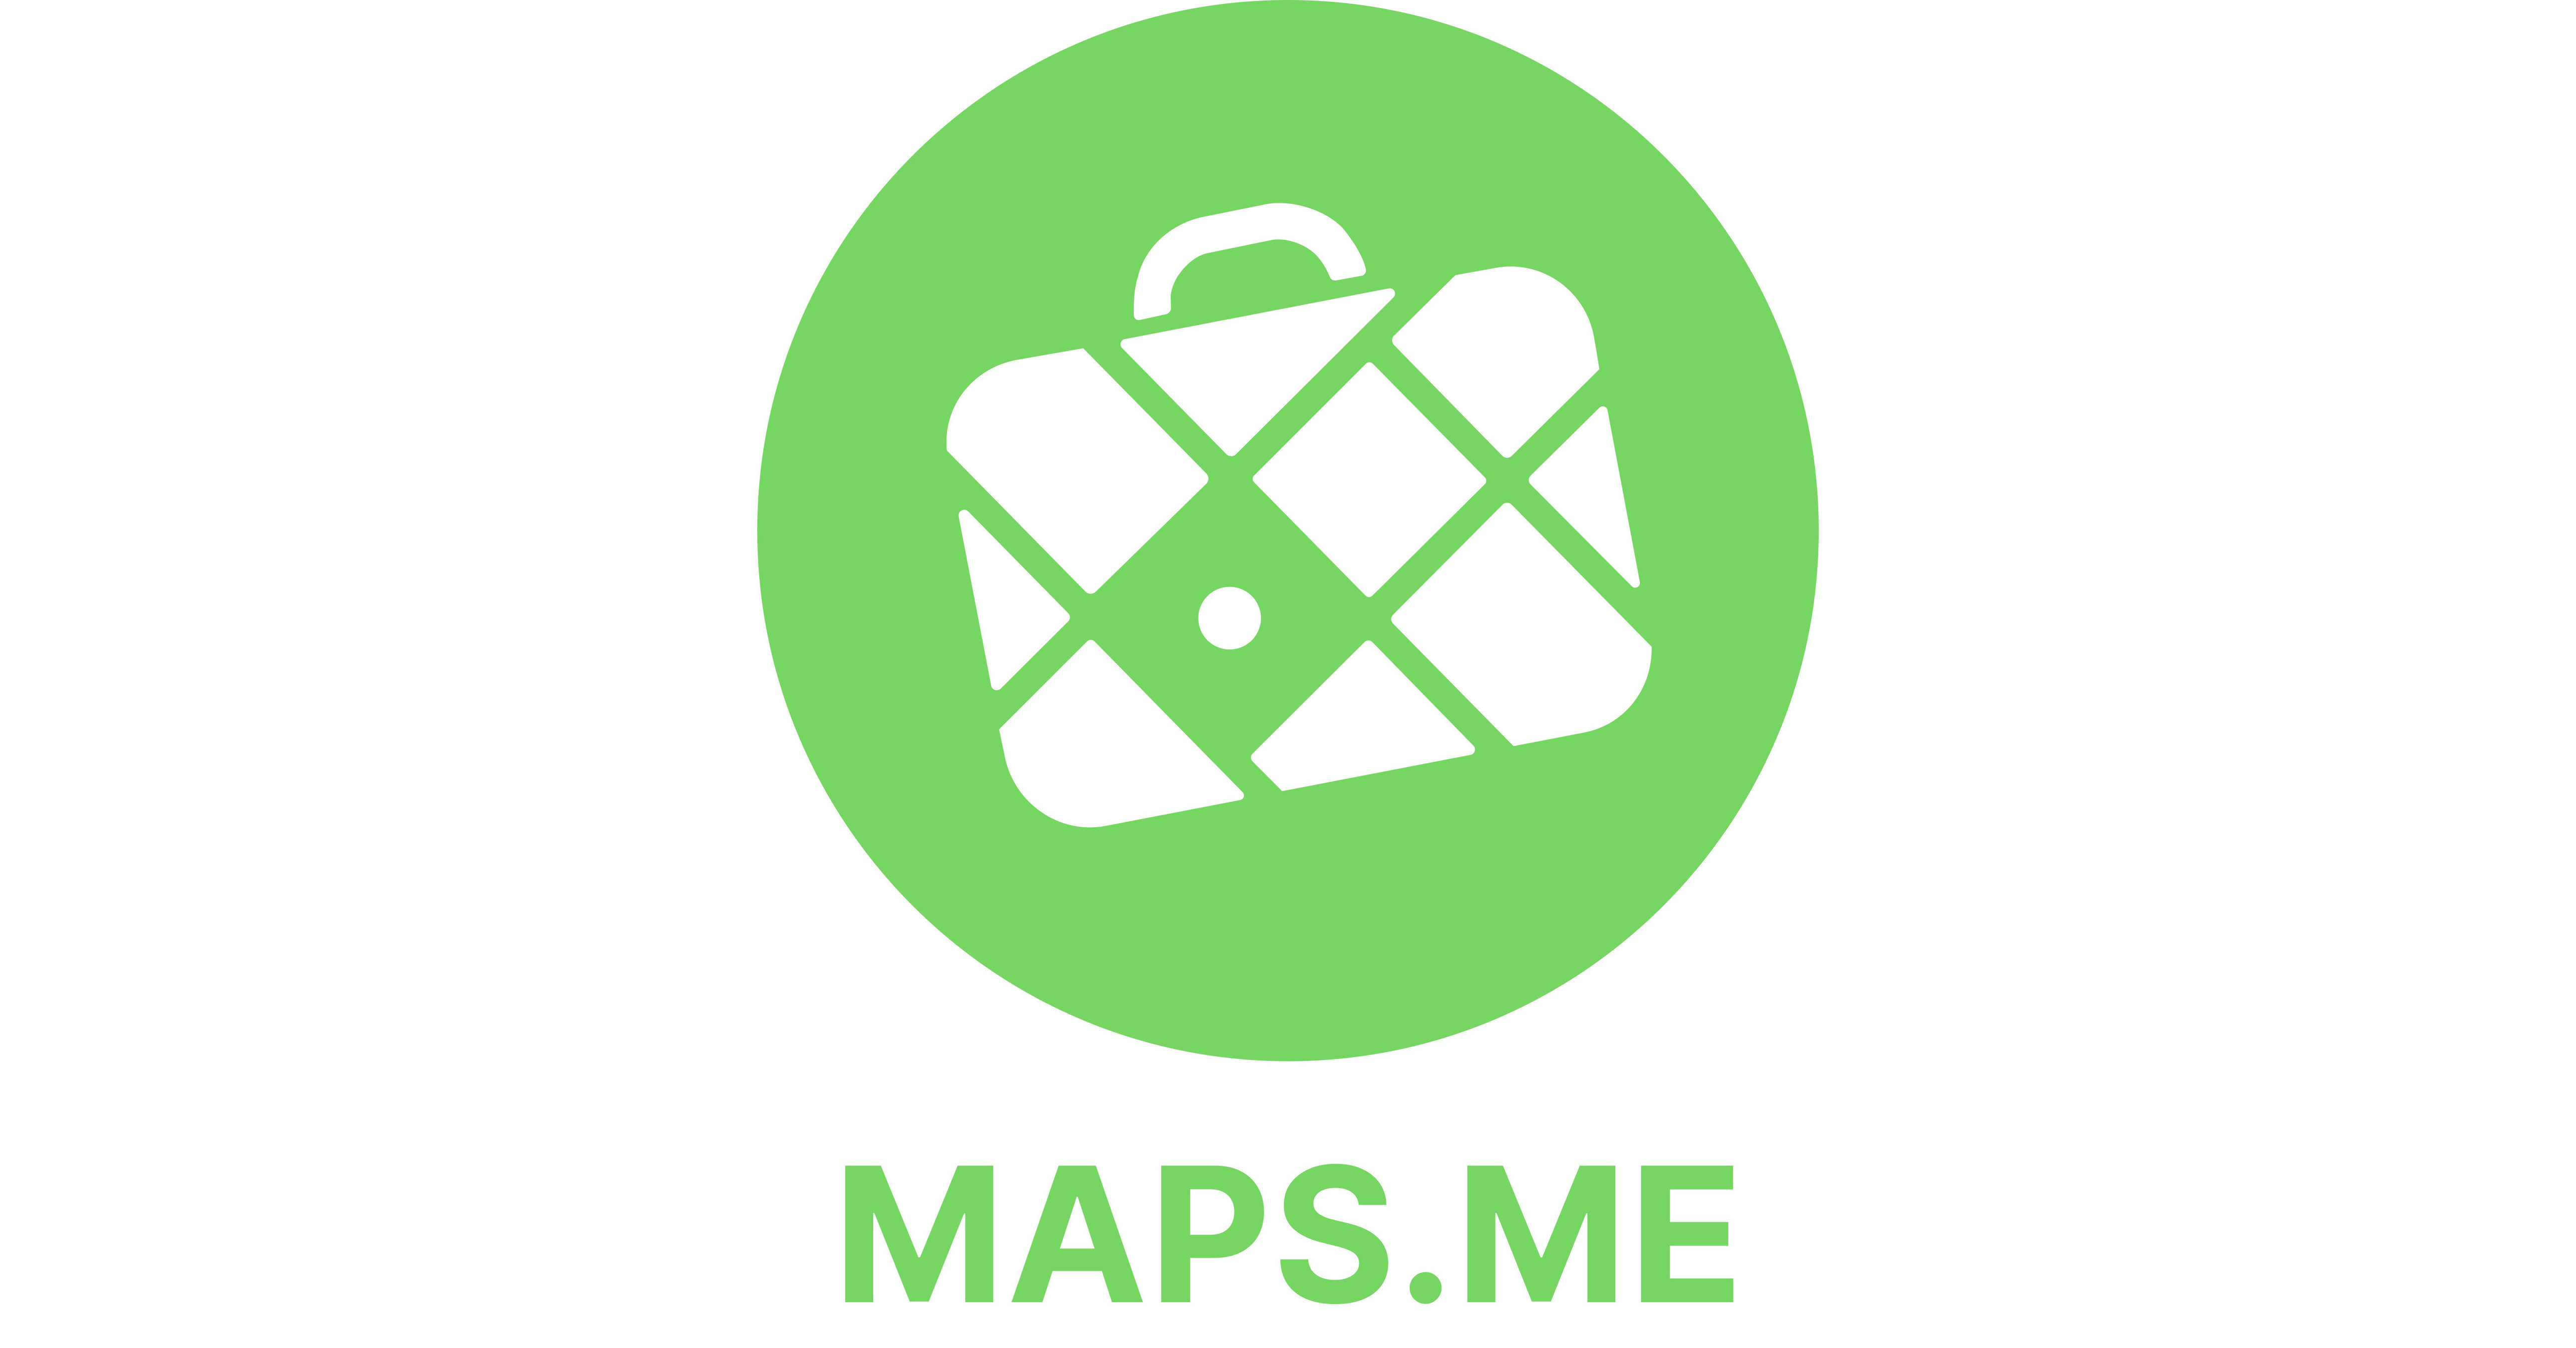 Maps.me kooperiert mit Monavate, um bis zu 60 Millionen aktive Nutzer mit  Prepaid-Karten zu versorgen, die mit digitalen Geldbörsen verknüpft sind  und von Mastercard unterstützt werden